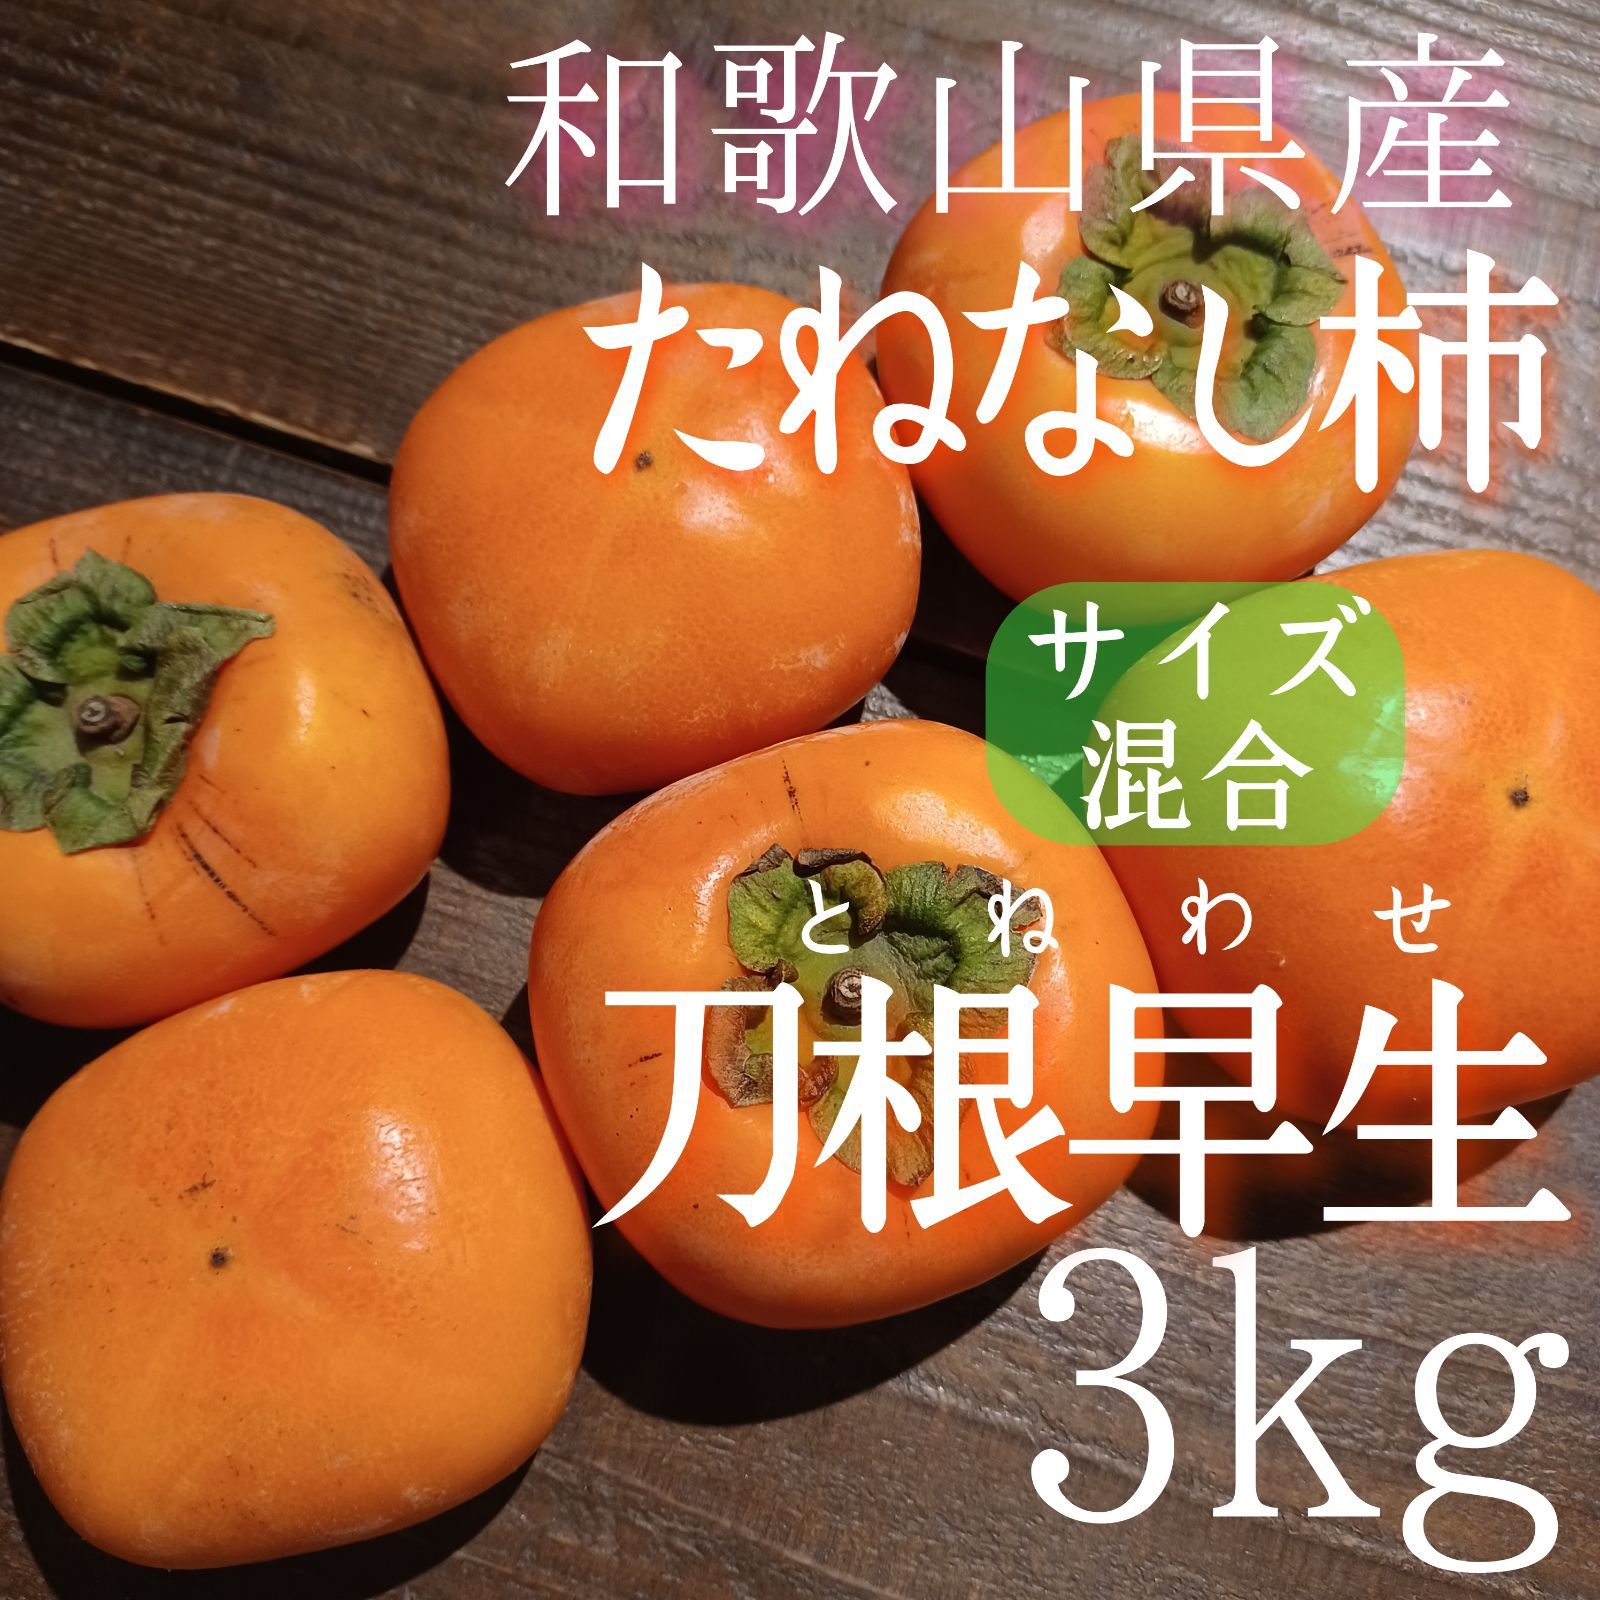 柿 たねなし柿 刀根早生 3kg 家庭用 和歌山 ⁂憲の果⁂ メルカリ